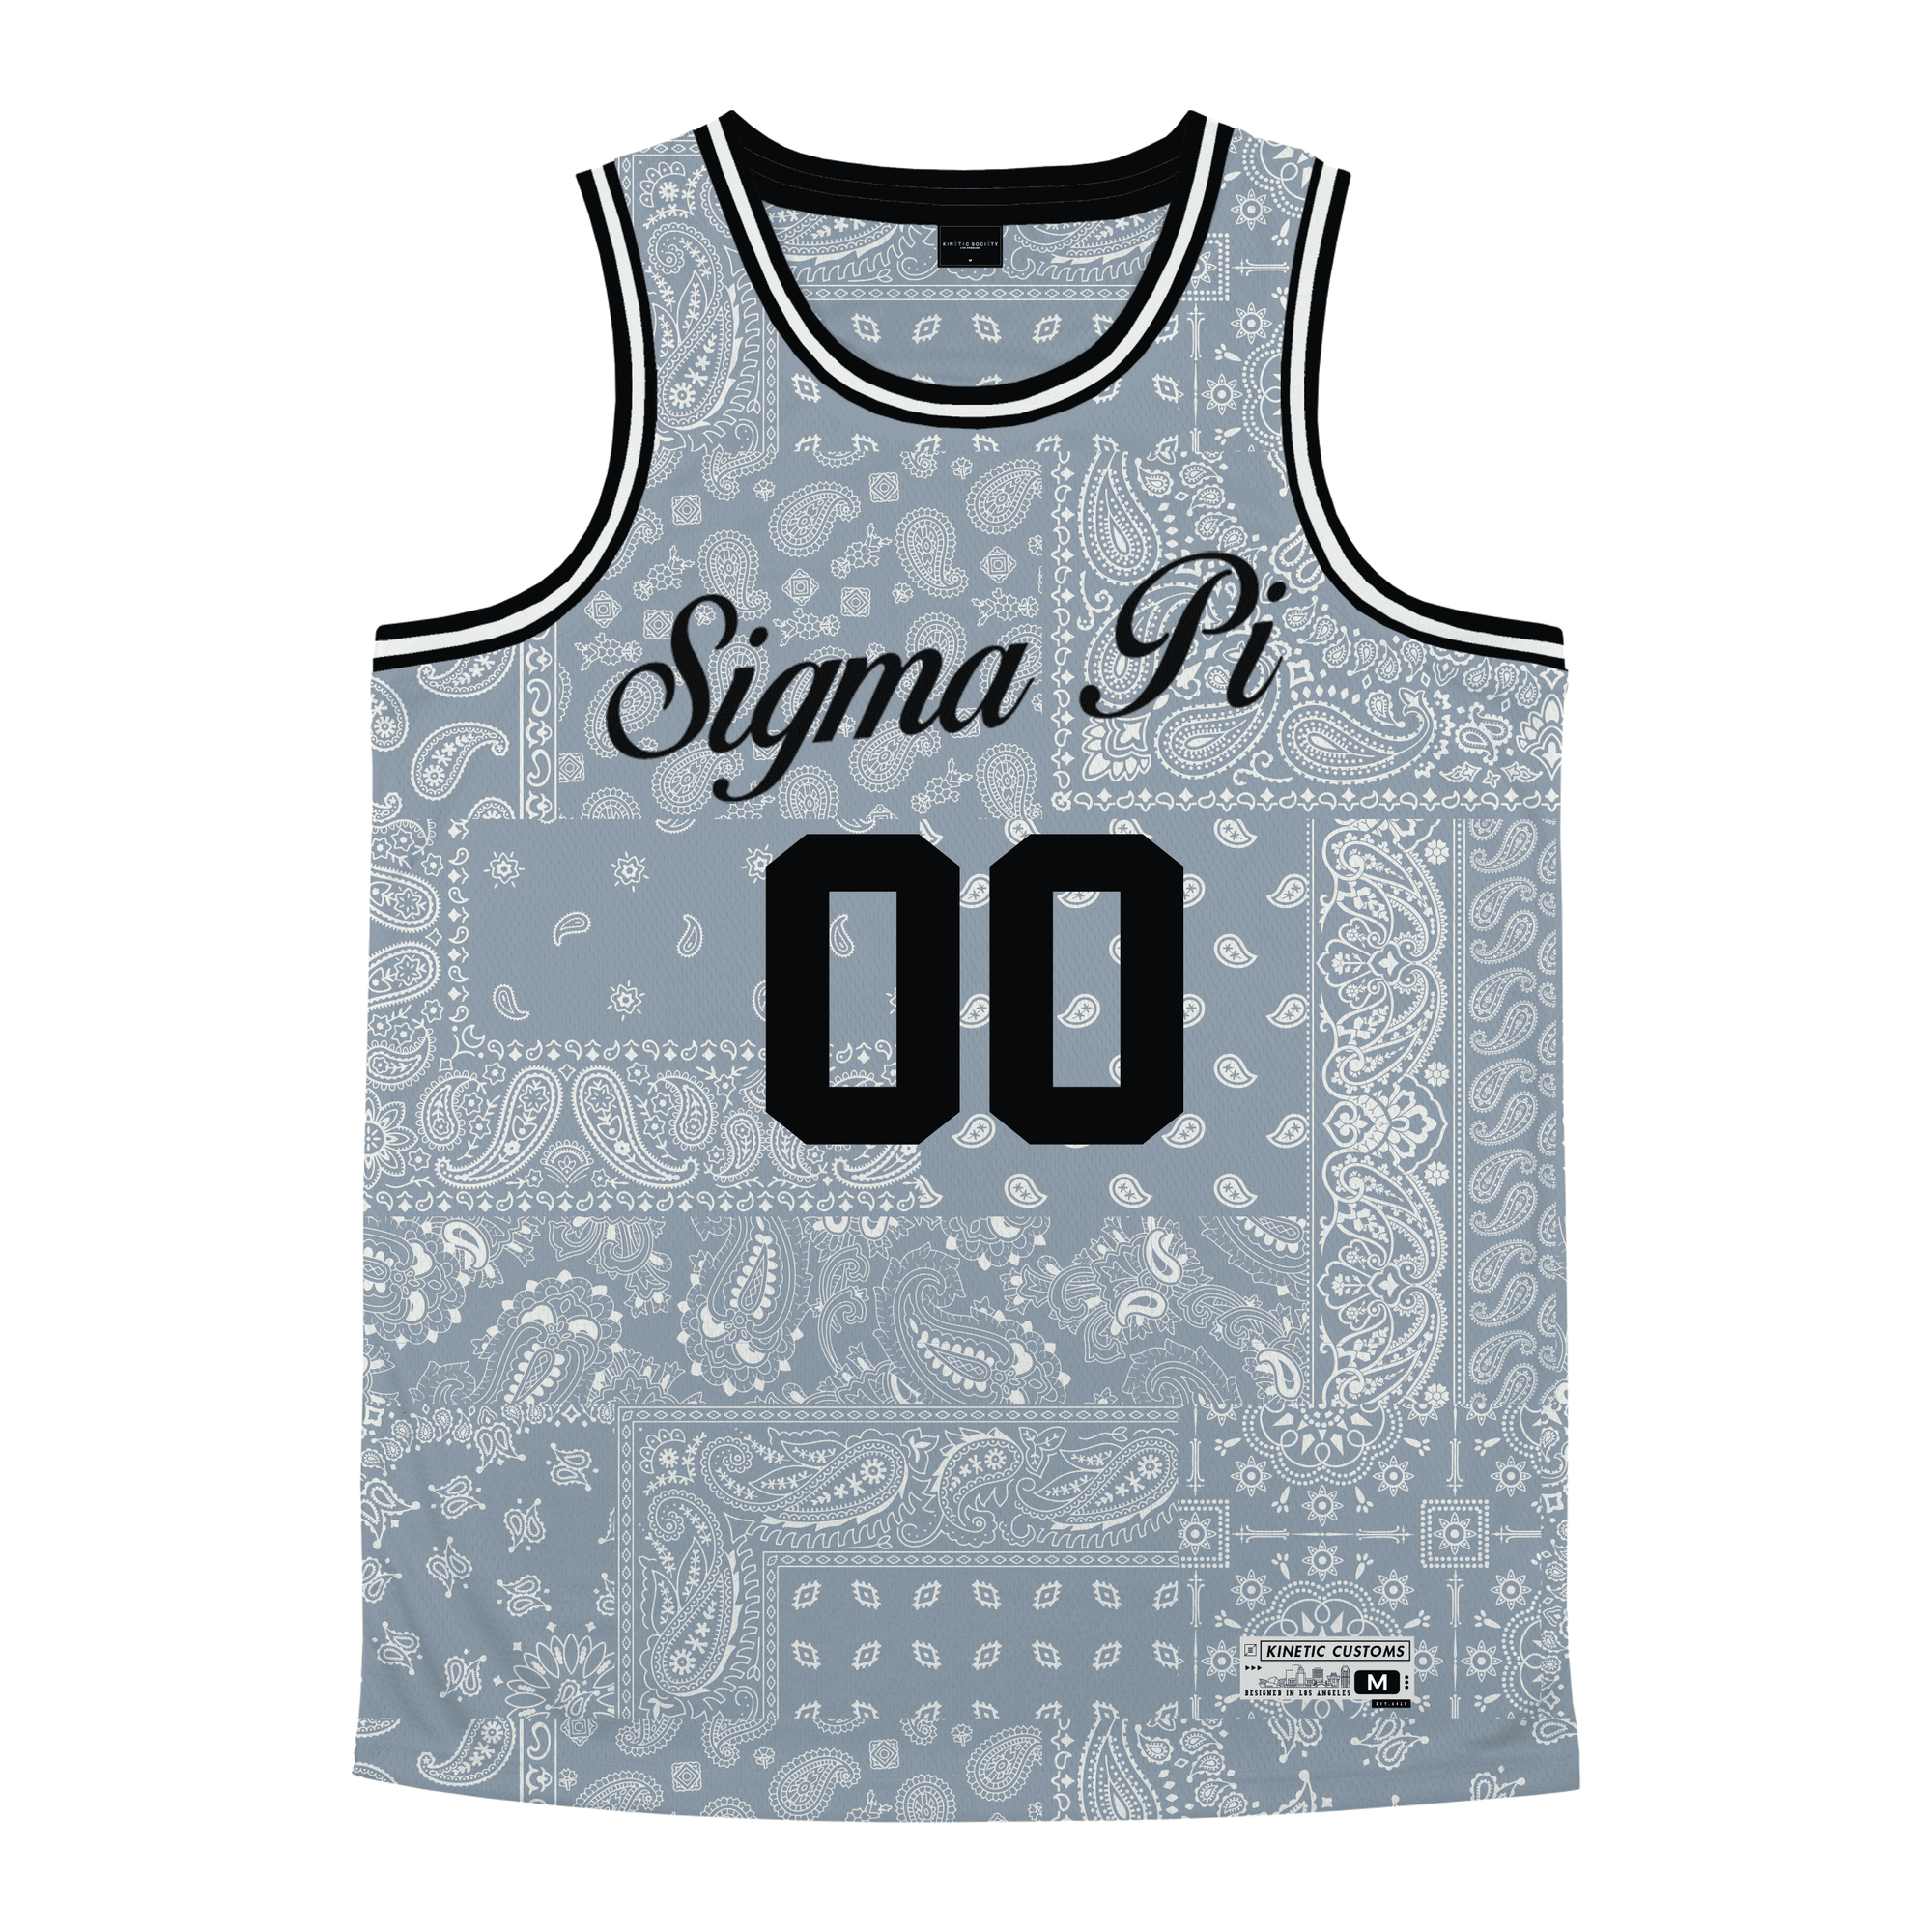 Sigma Pi - Slate Bandana - Basketball Jersey